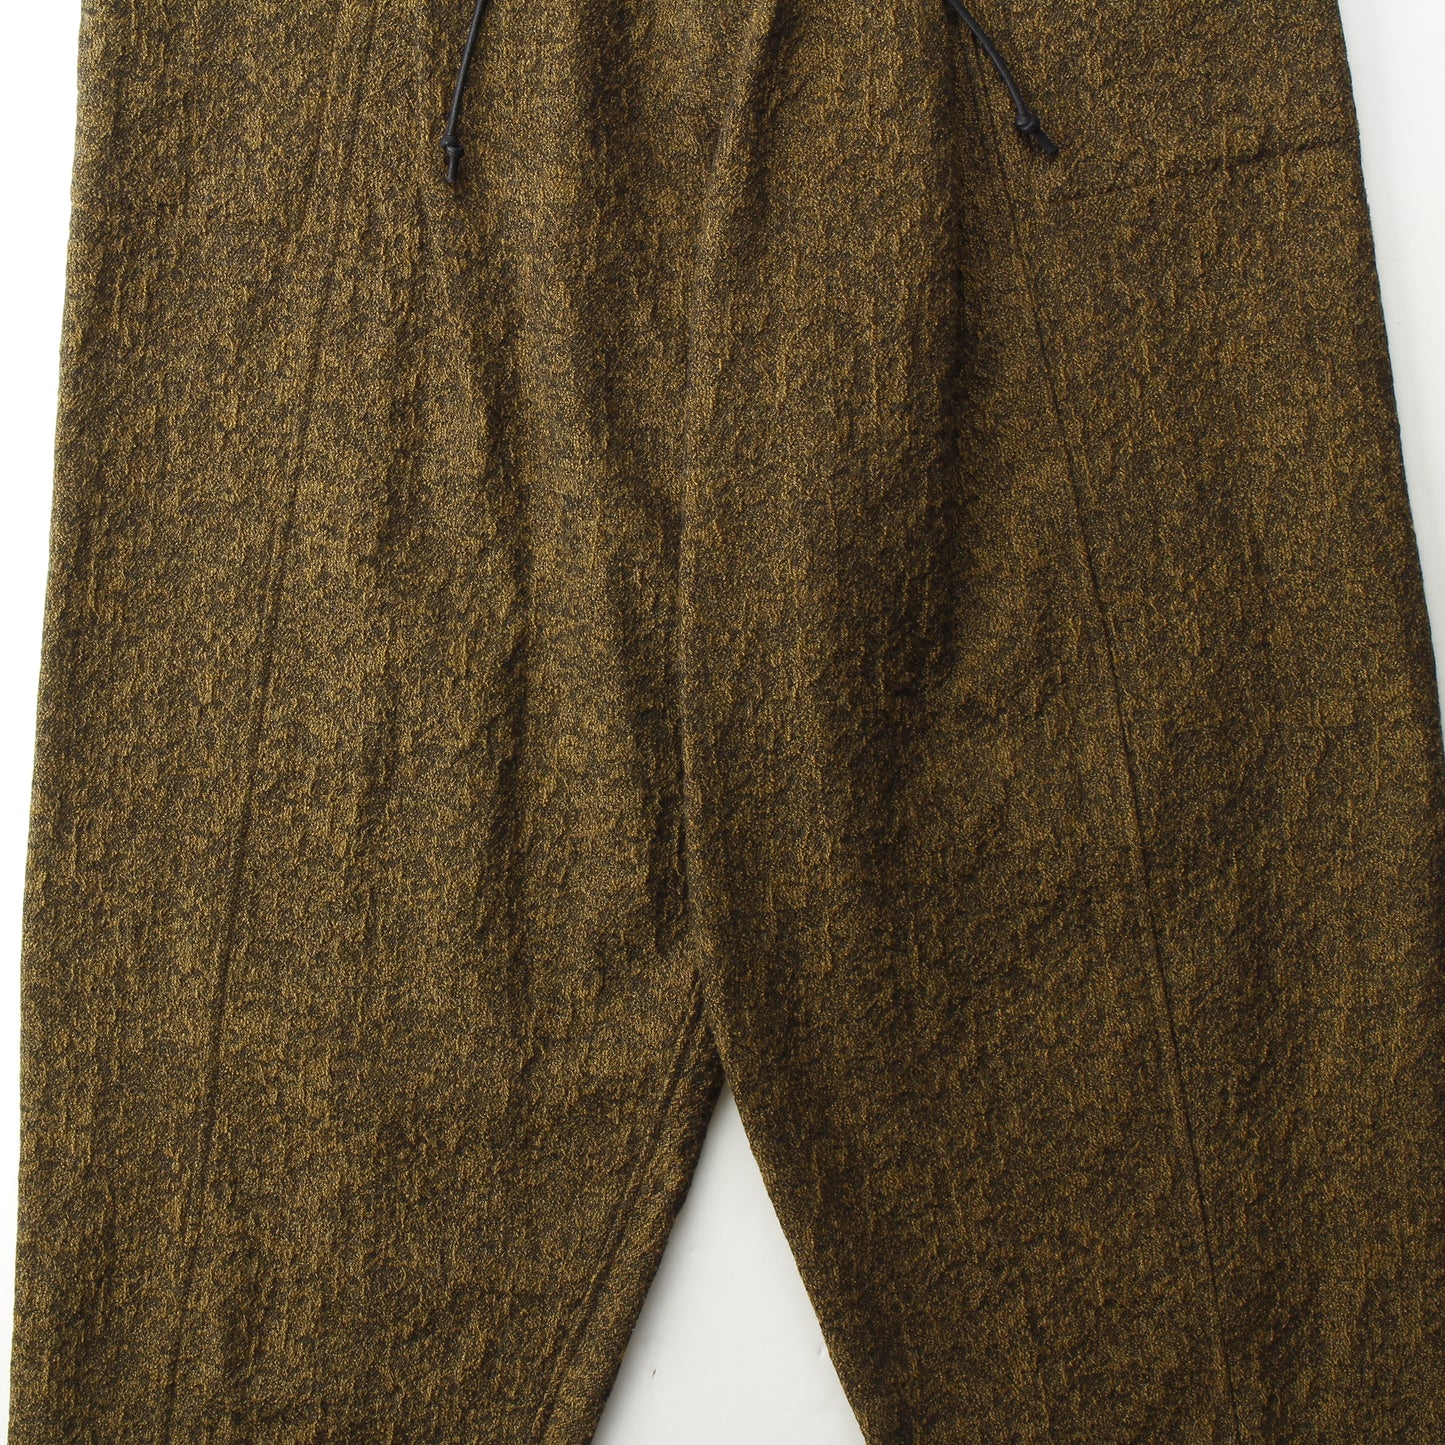 Moss Jacquard CottonWool Switching Wide Pants / MUSTARD